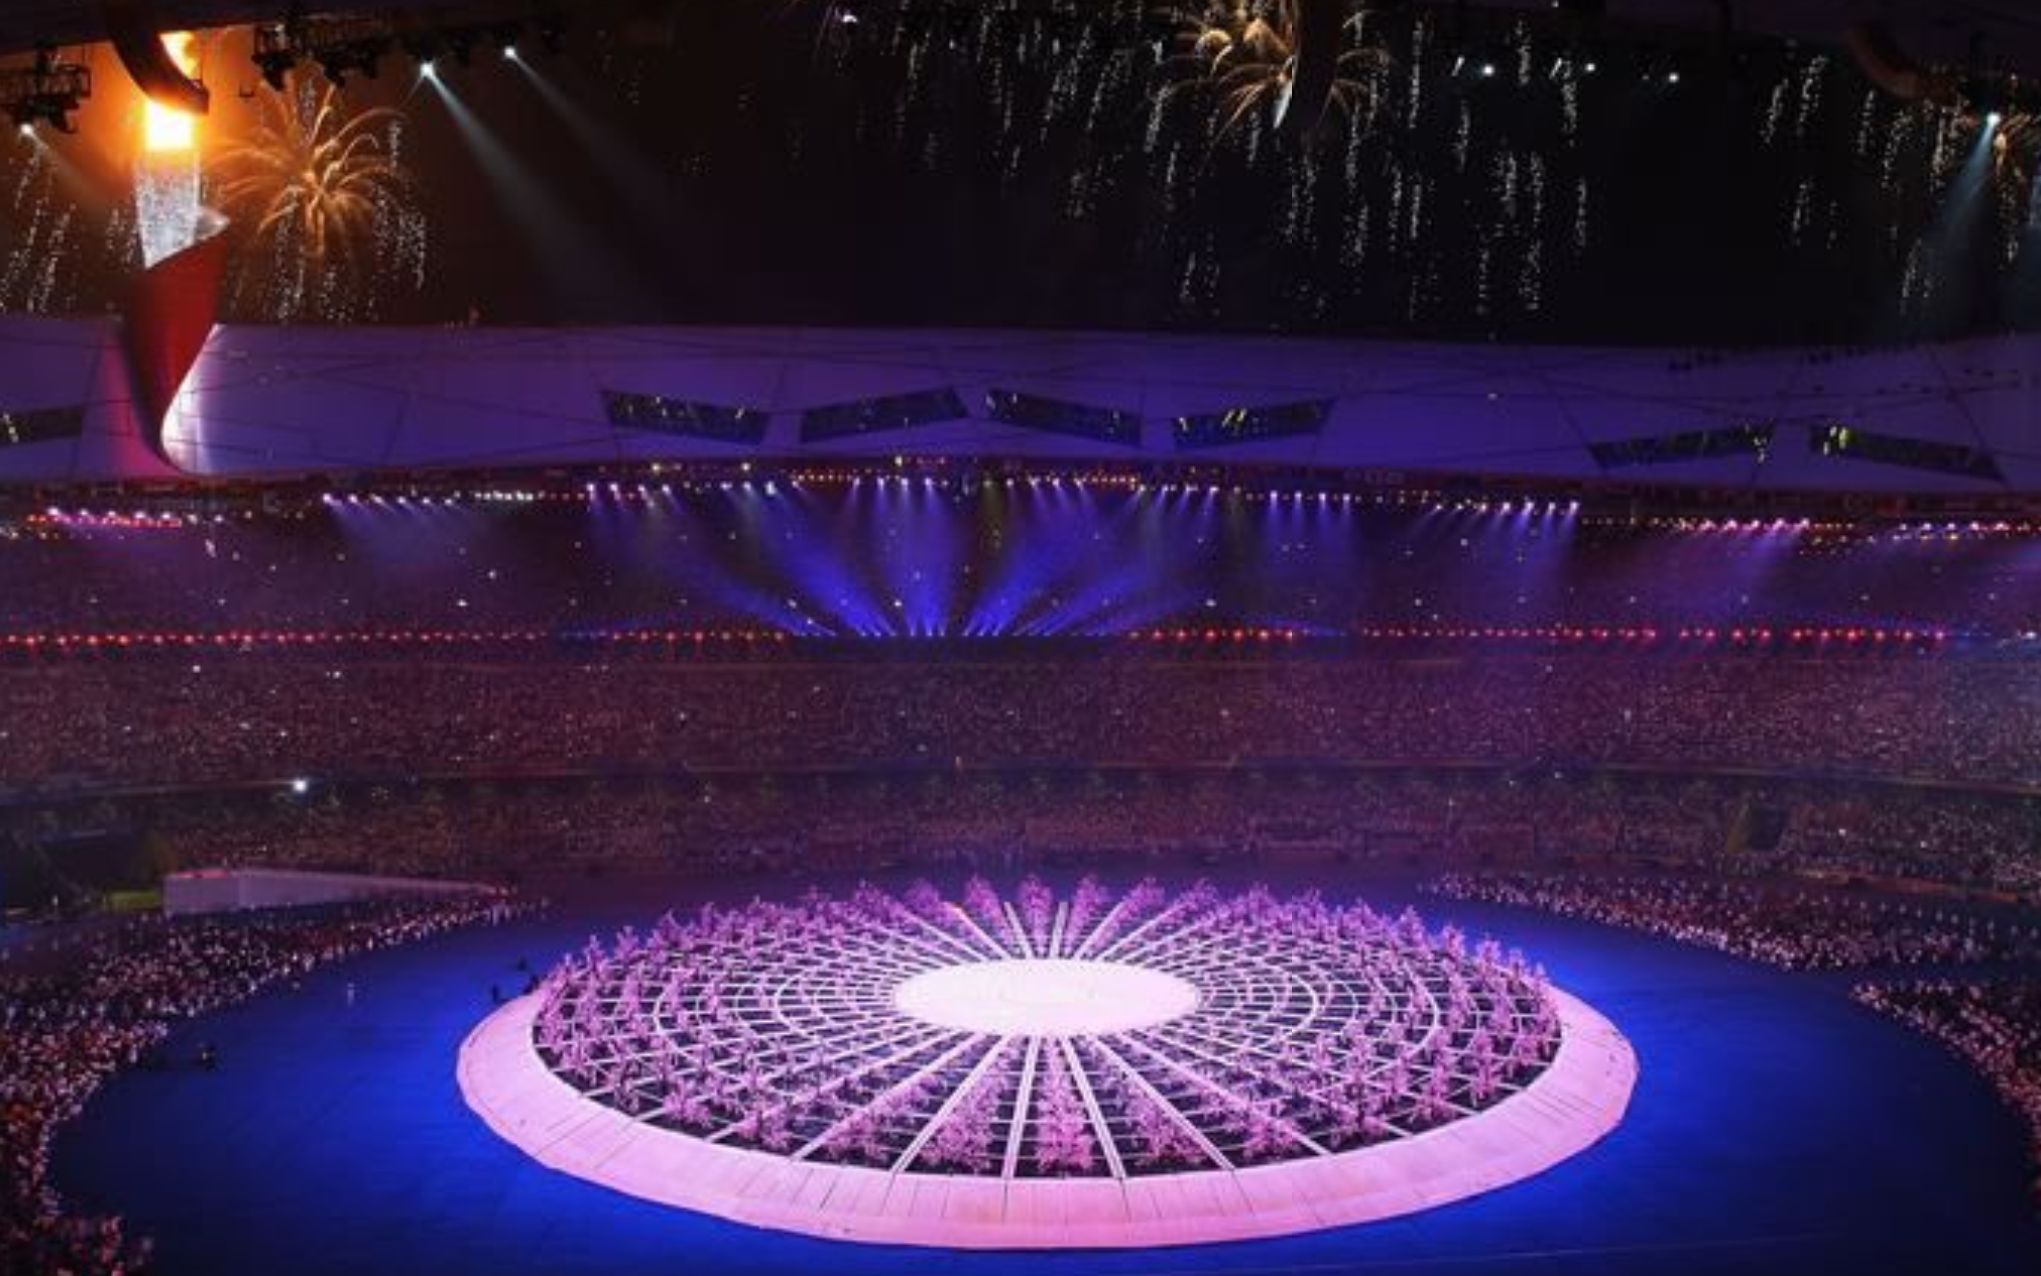 北京残奥会开幕时间图片